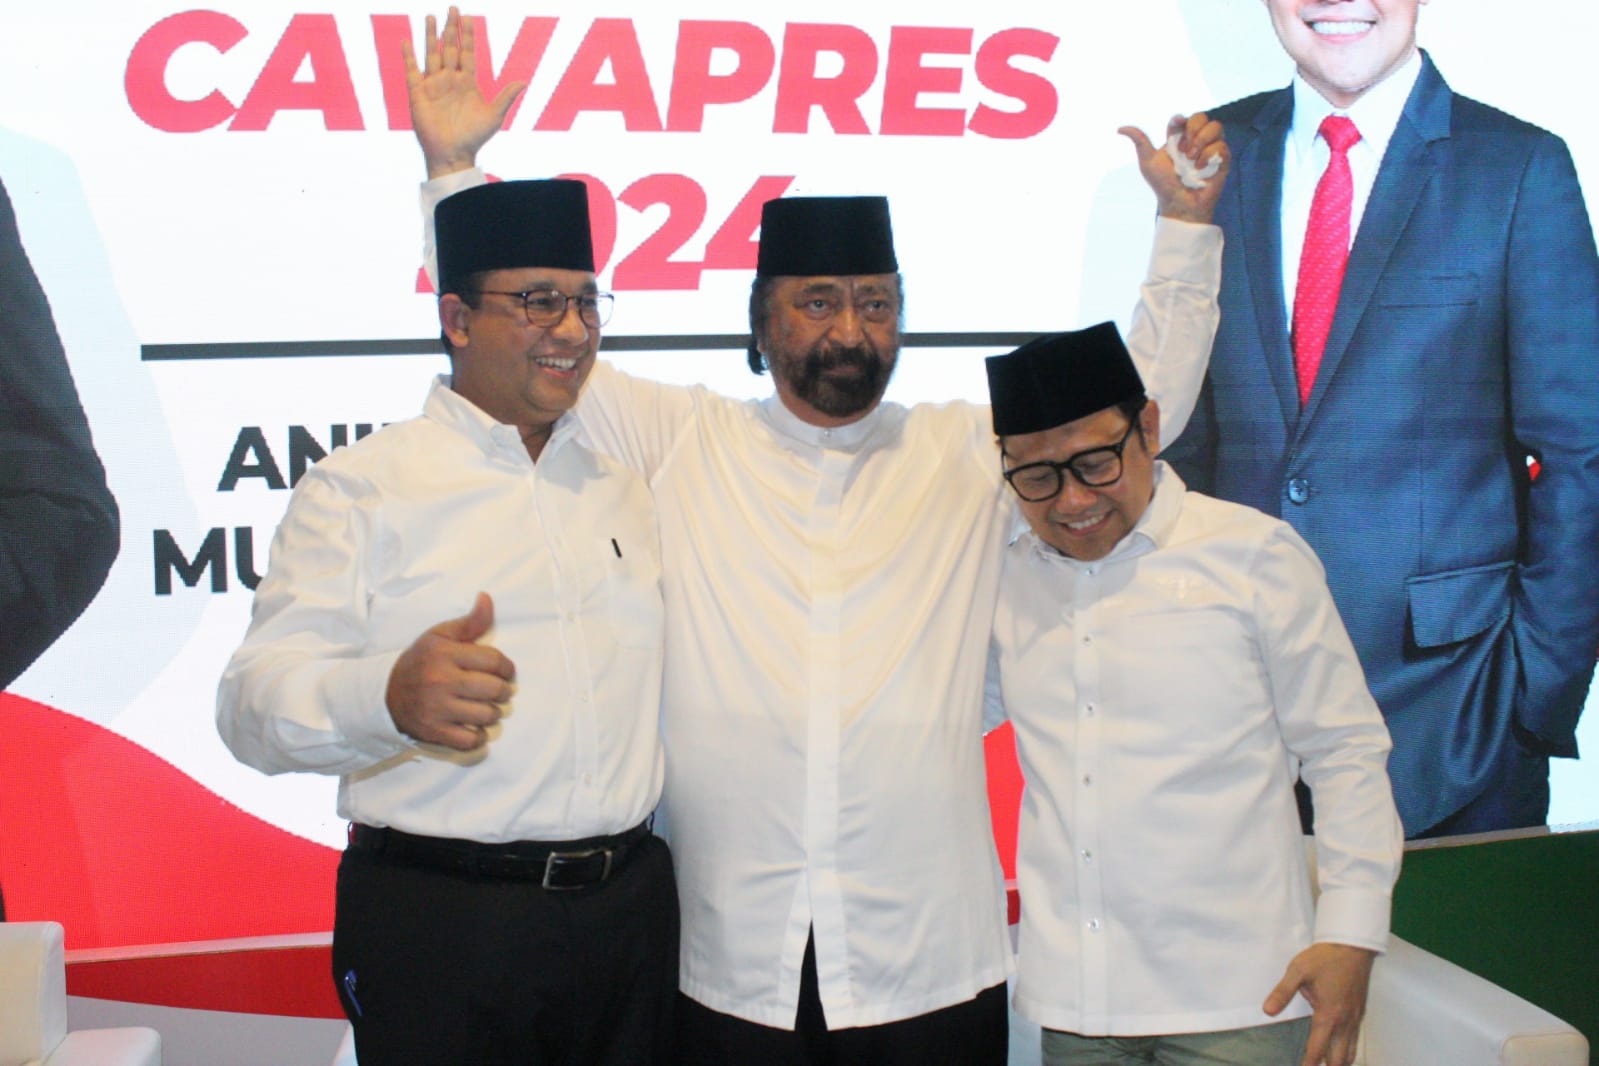 Surya Paloh Ketua Umum Partai Nasdem bersama Anies Baswedan dan Muhaimin Iskandar atau Cak Imin di Hotel, Majapahit, Surabaya, Sabtu (2/9/2023). Foto: Frans magang suarasurabaya.net